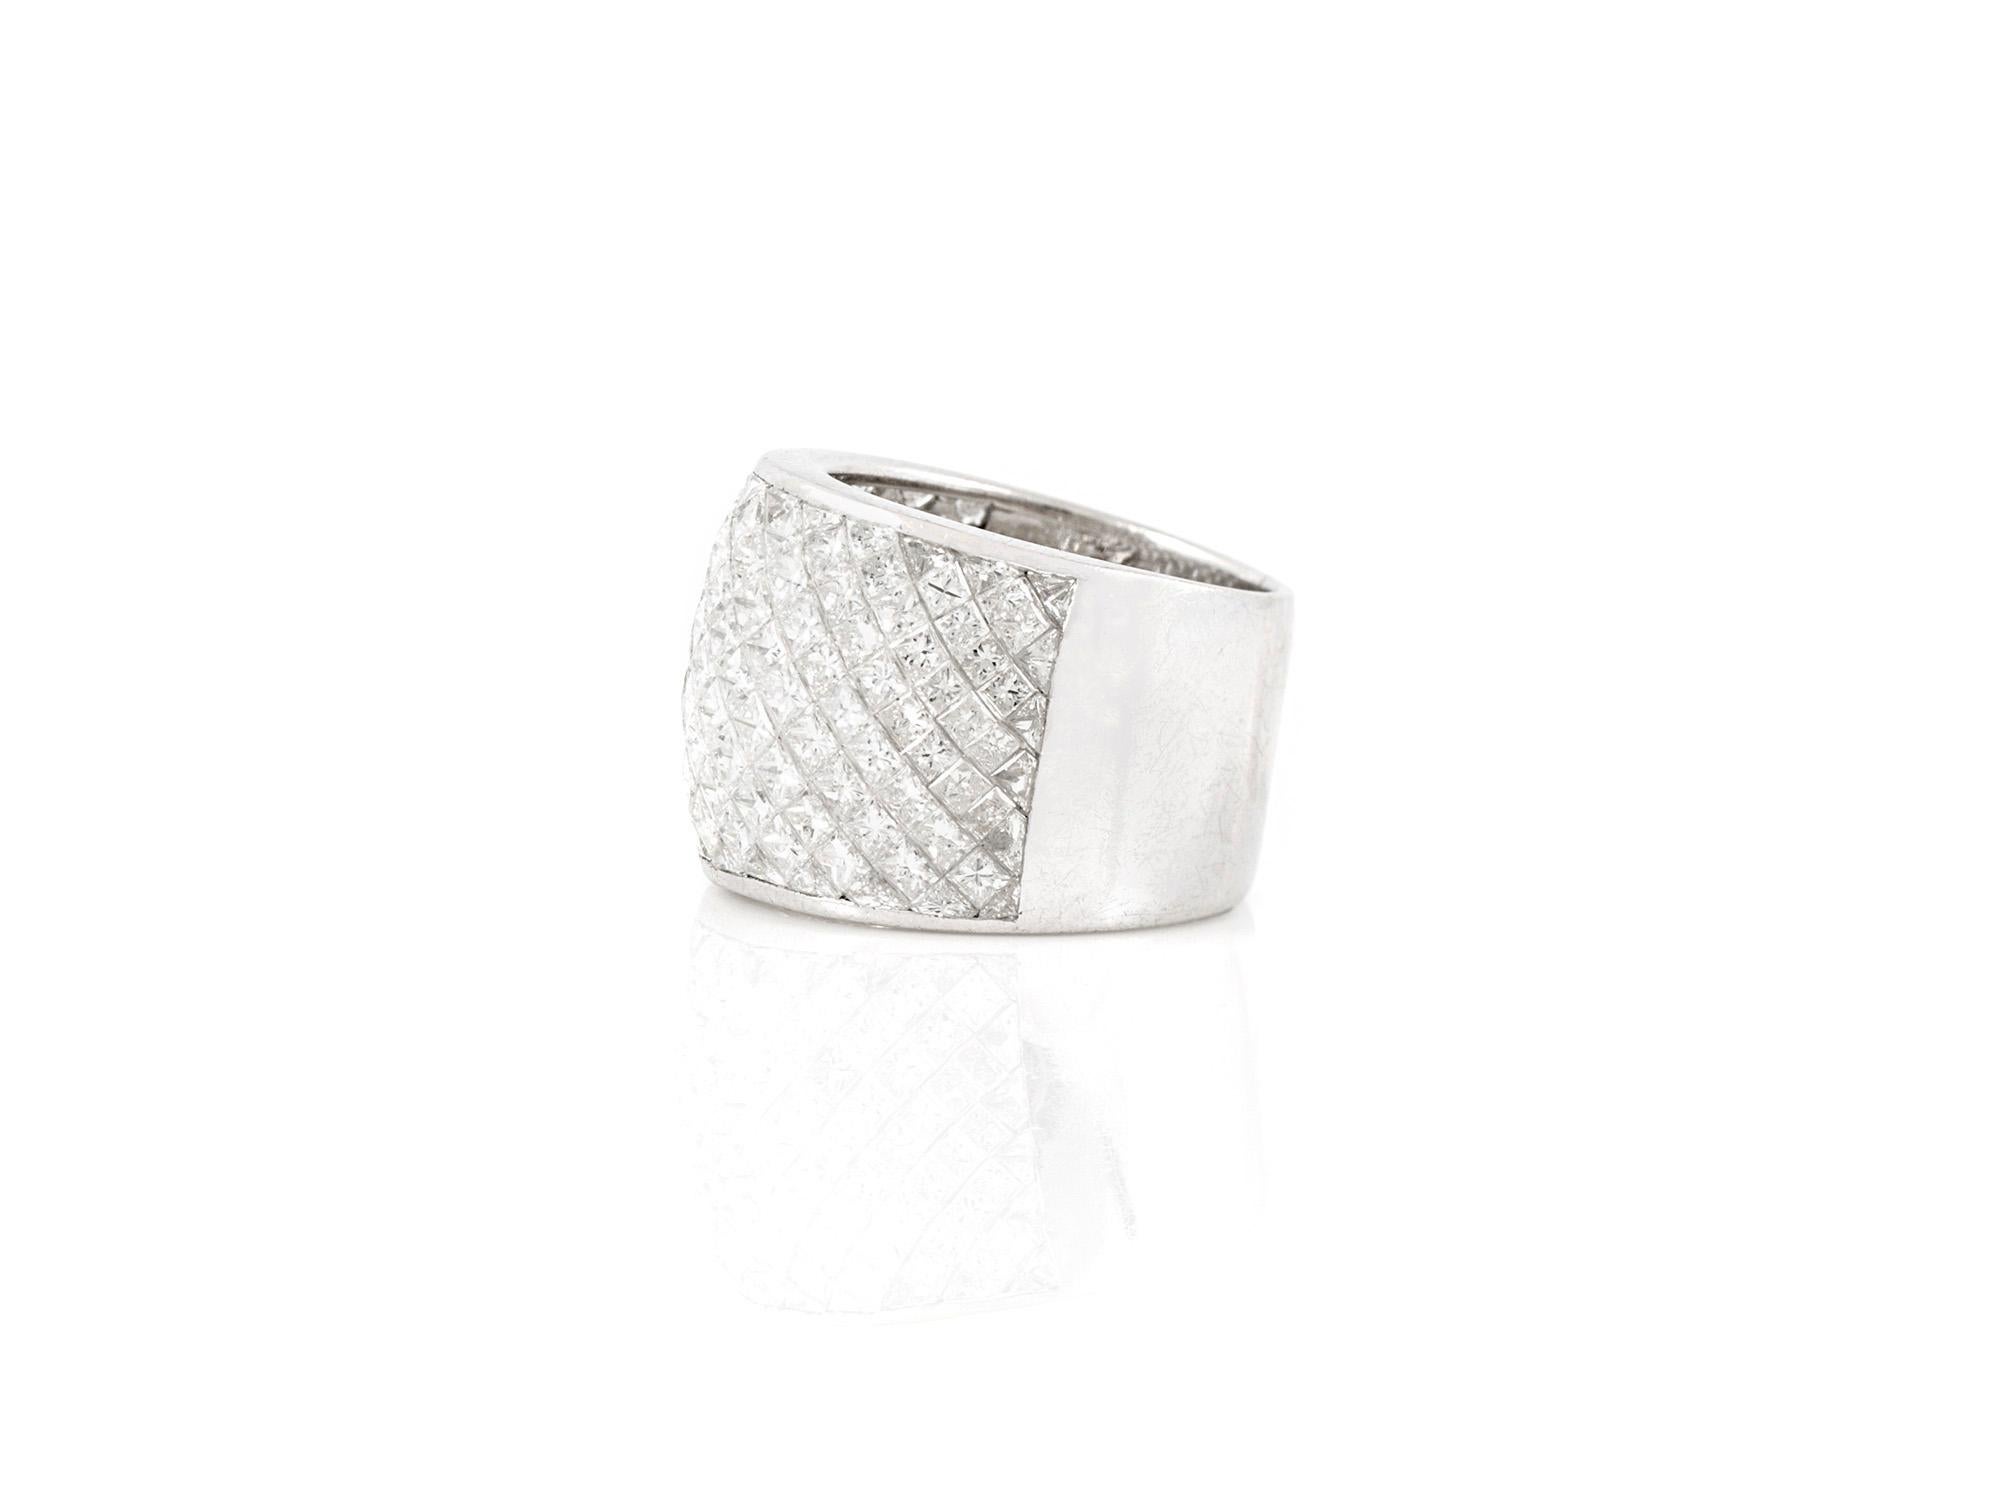 Der schöne Ring ist aus Platin gefertigt und mit quadratisch geschliffenen Diamanten mit einem Gesamtgewicht von 6,65 Karat besetzt.
Unsichtbare Umgebung.
Karat 2000.